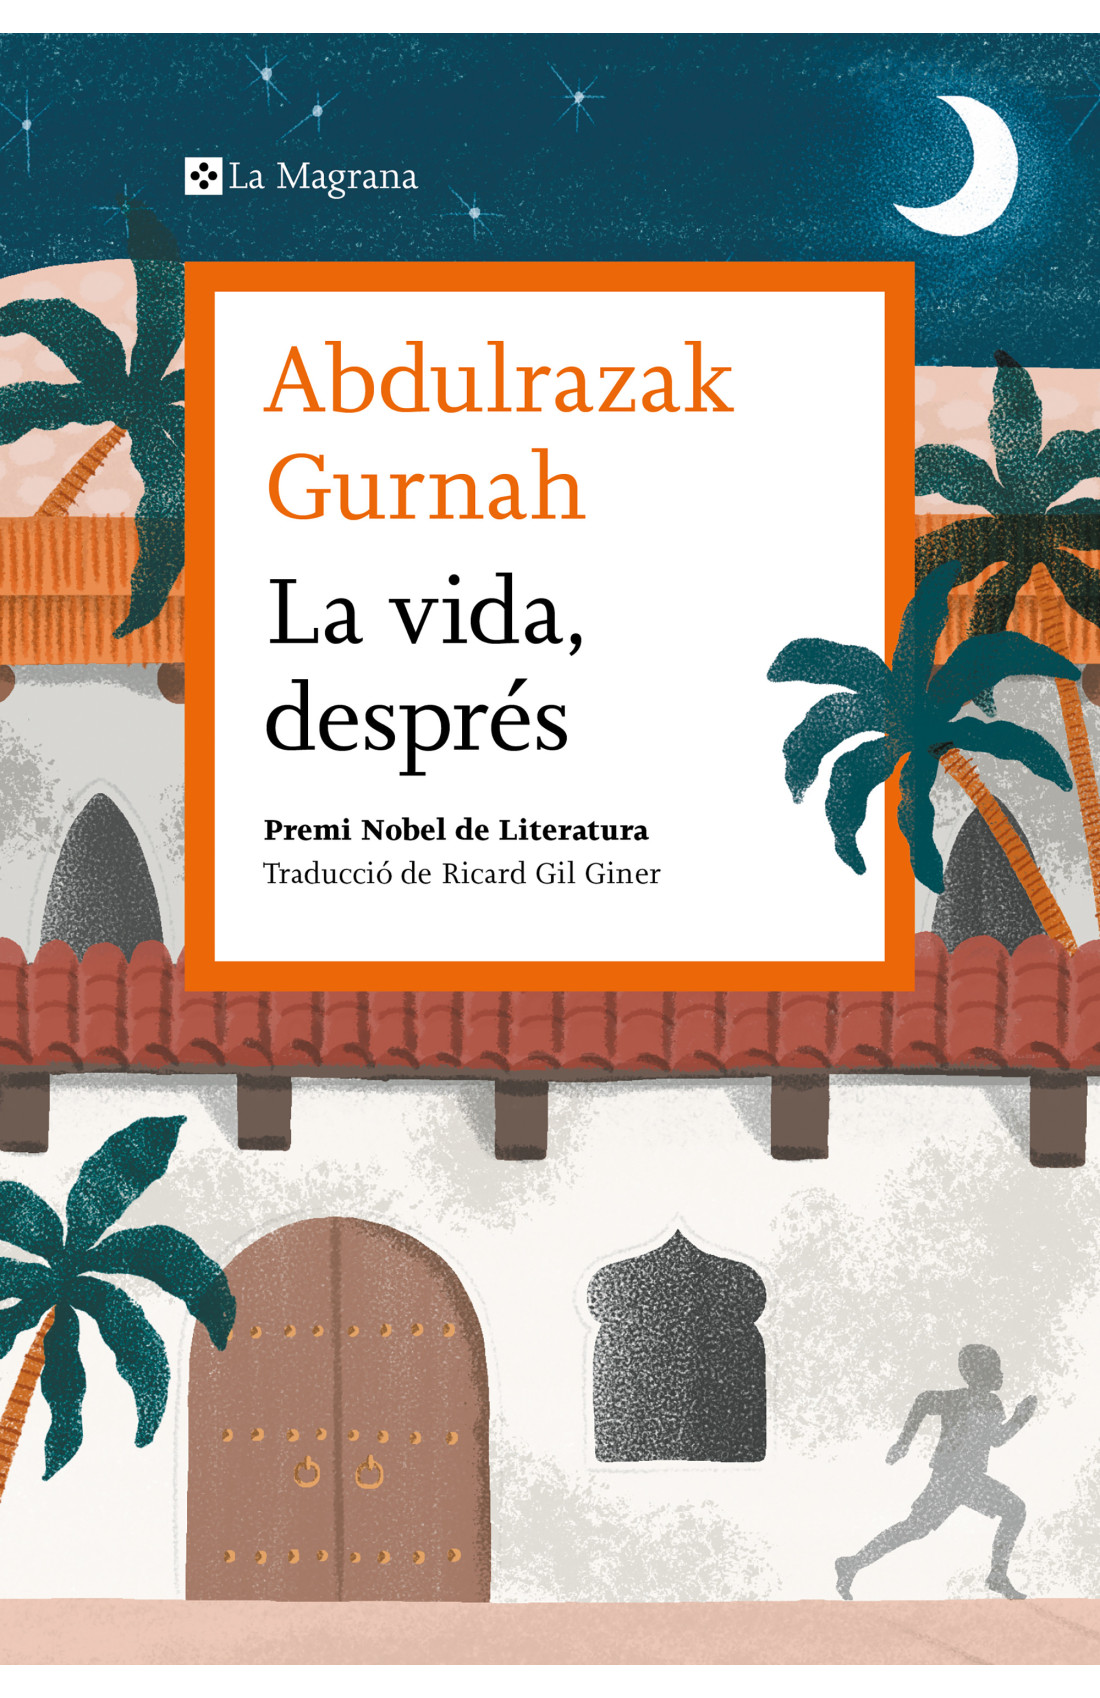 Llibre: La vida després. Abdulrazak Gurnah